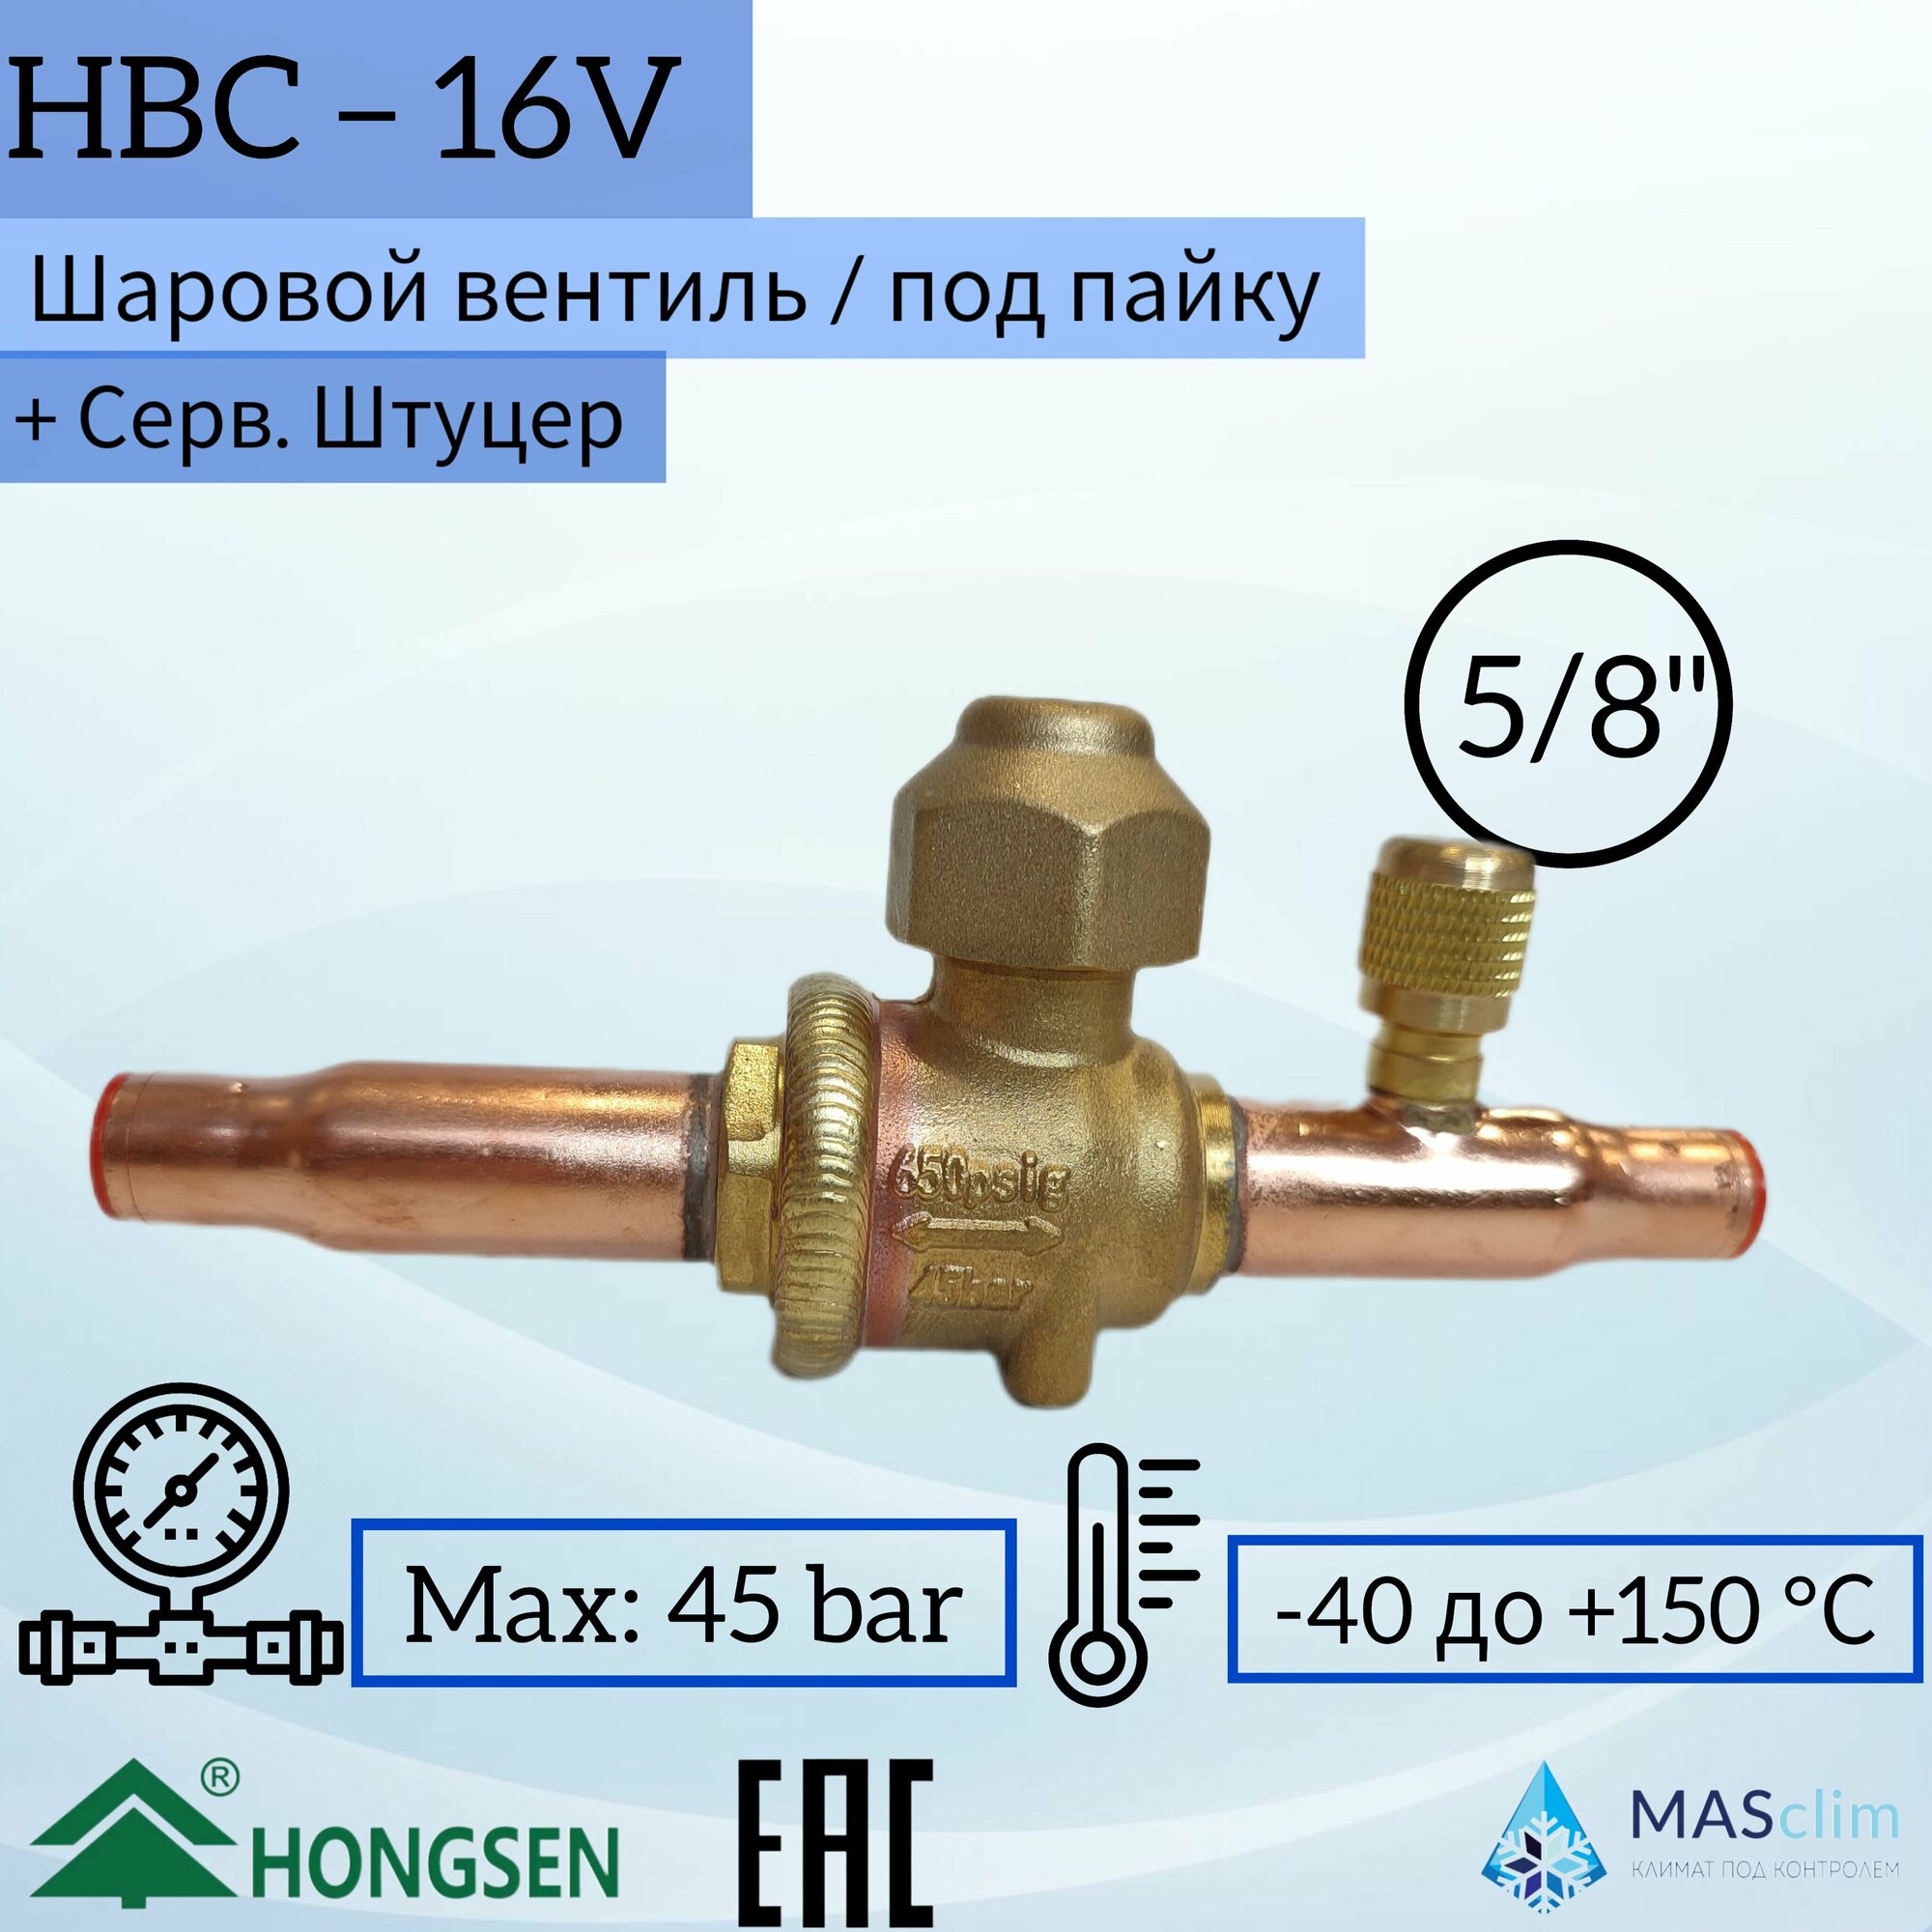 Шаровой кран Hongsen HBC-16V, 5/8, пайка, сервисный штуцер